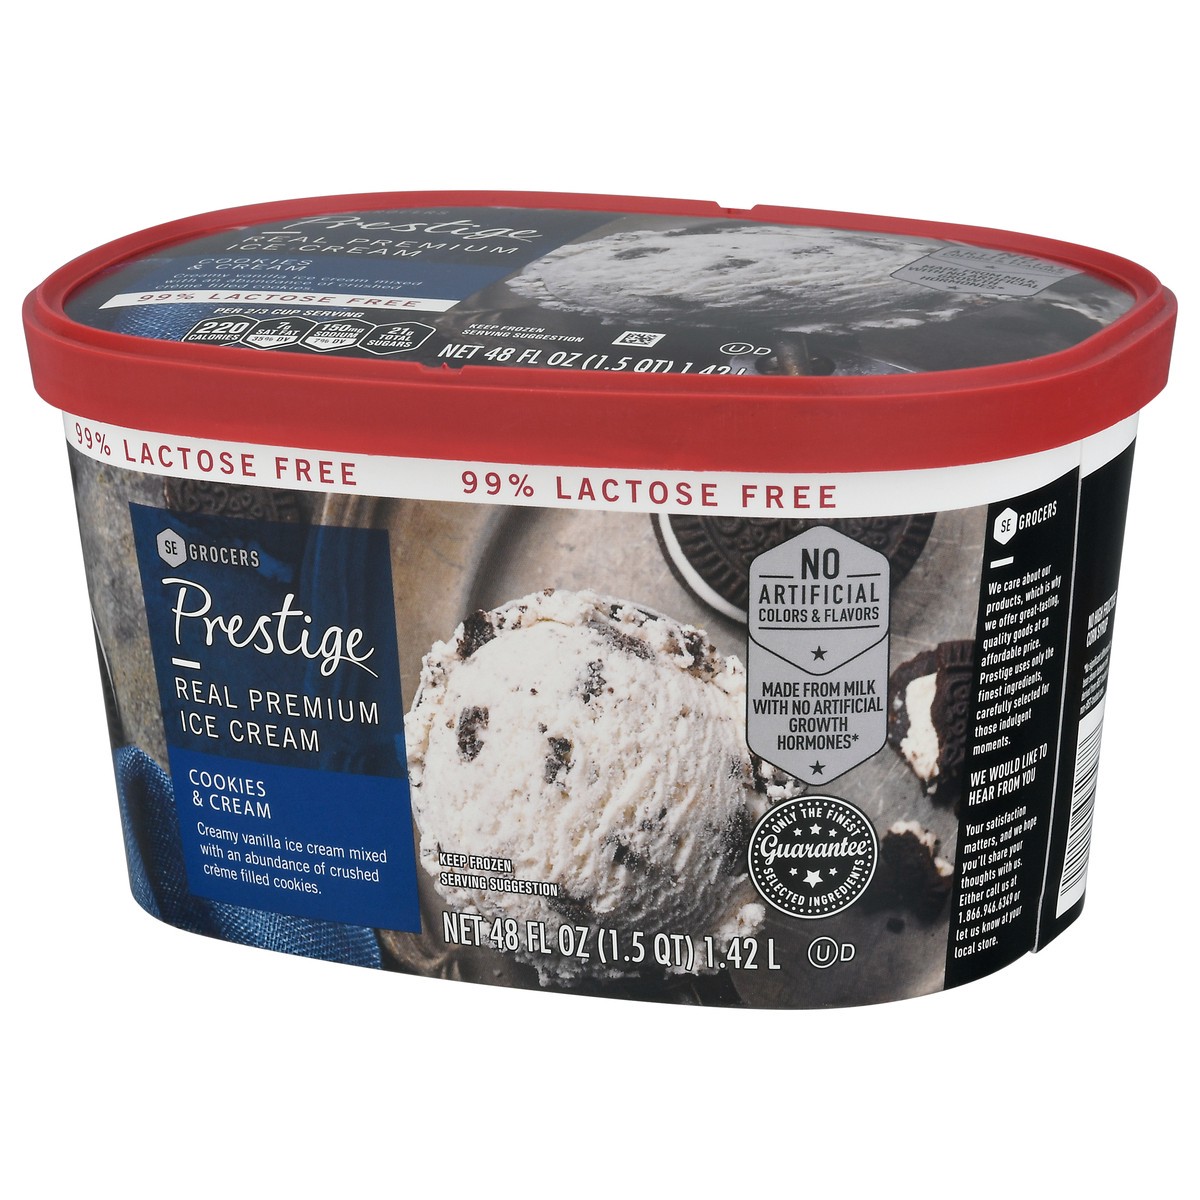 slide 3 of 9, Prestige Real Premium Ice Cream 99% Lactose Free Cookies & Cream, 48 oz